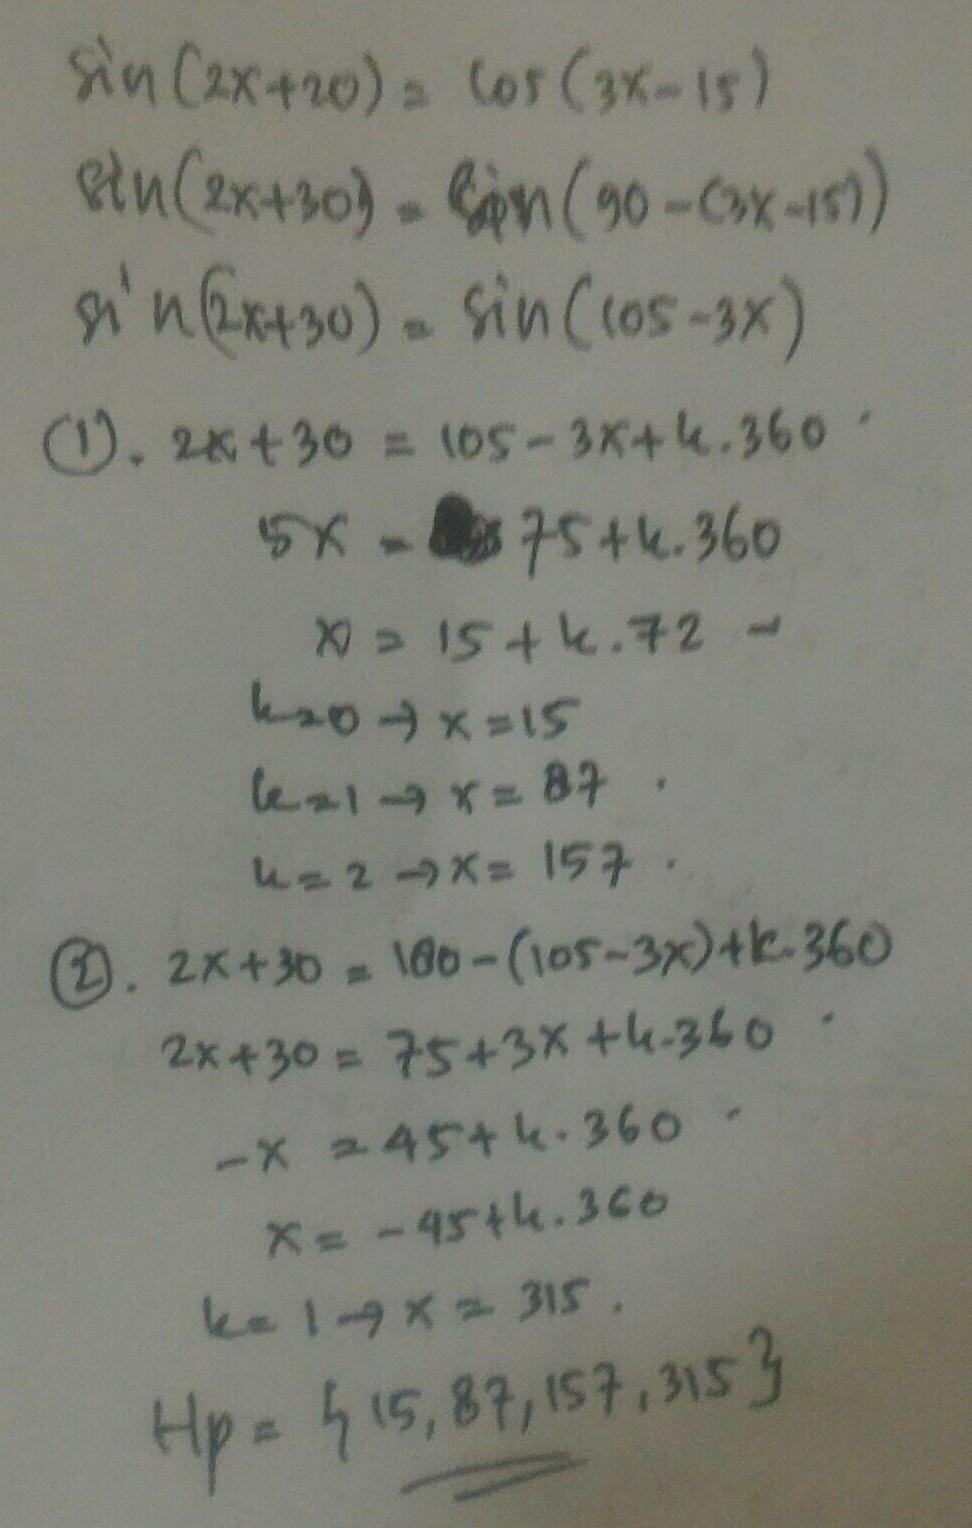 Pada sistem persamaan 2p + 3q = 2 dan 4p - q = 18, nilai 5p - 2q2 adalah